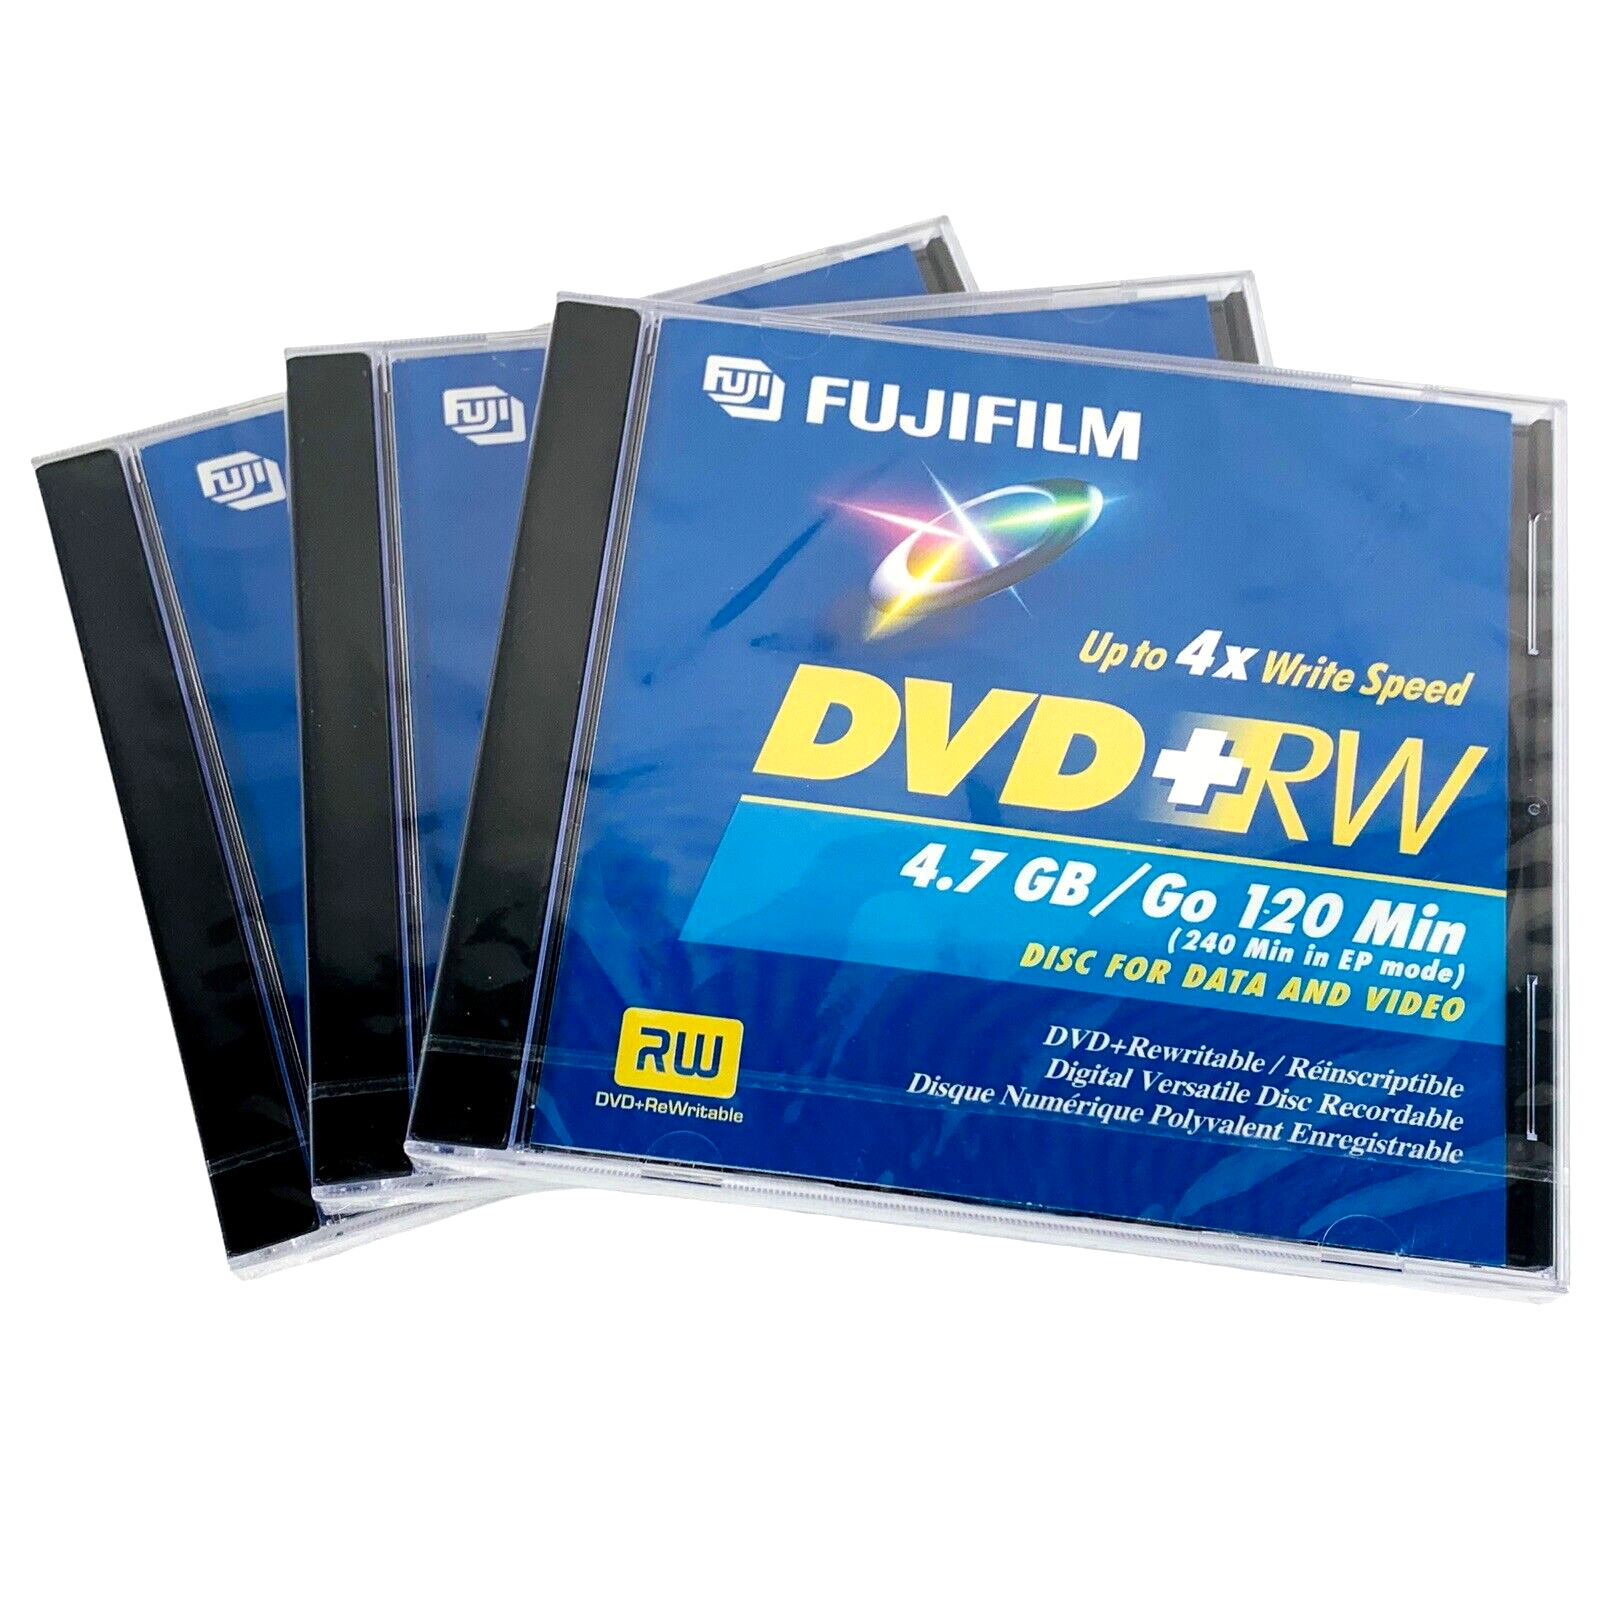 Fujifilm DVD+RW 4X 120 Minutes 4.7GB HQ Rewritable Data Video Discs - Lot of 3